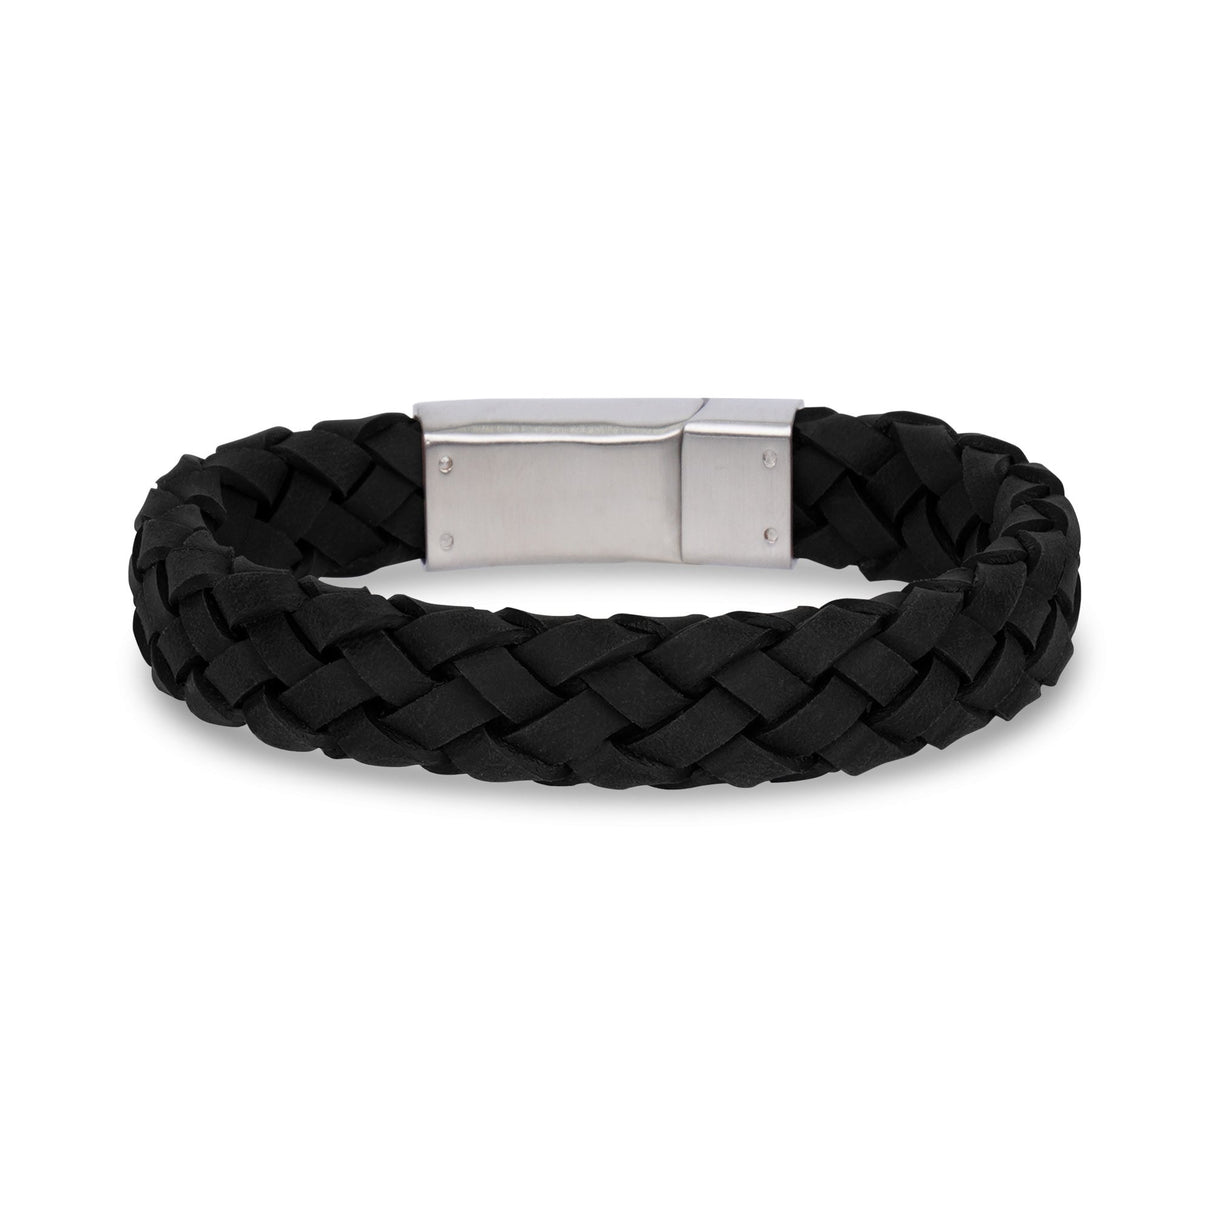 Mens Steel Leather Bracelets - 12mm Black Leather Engravable Steel Bracelet